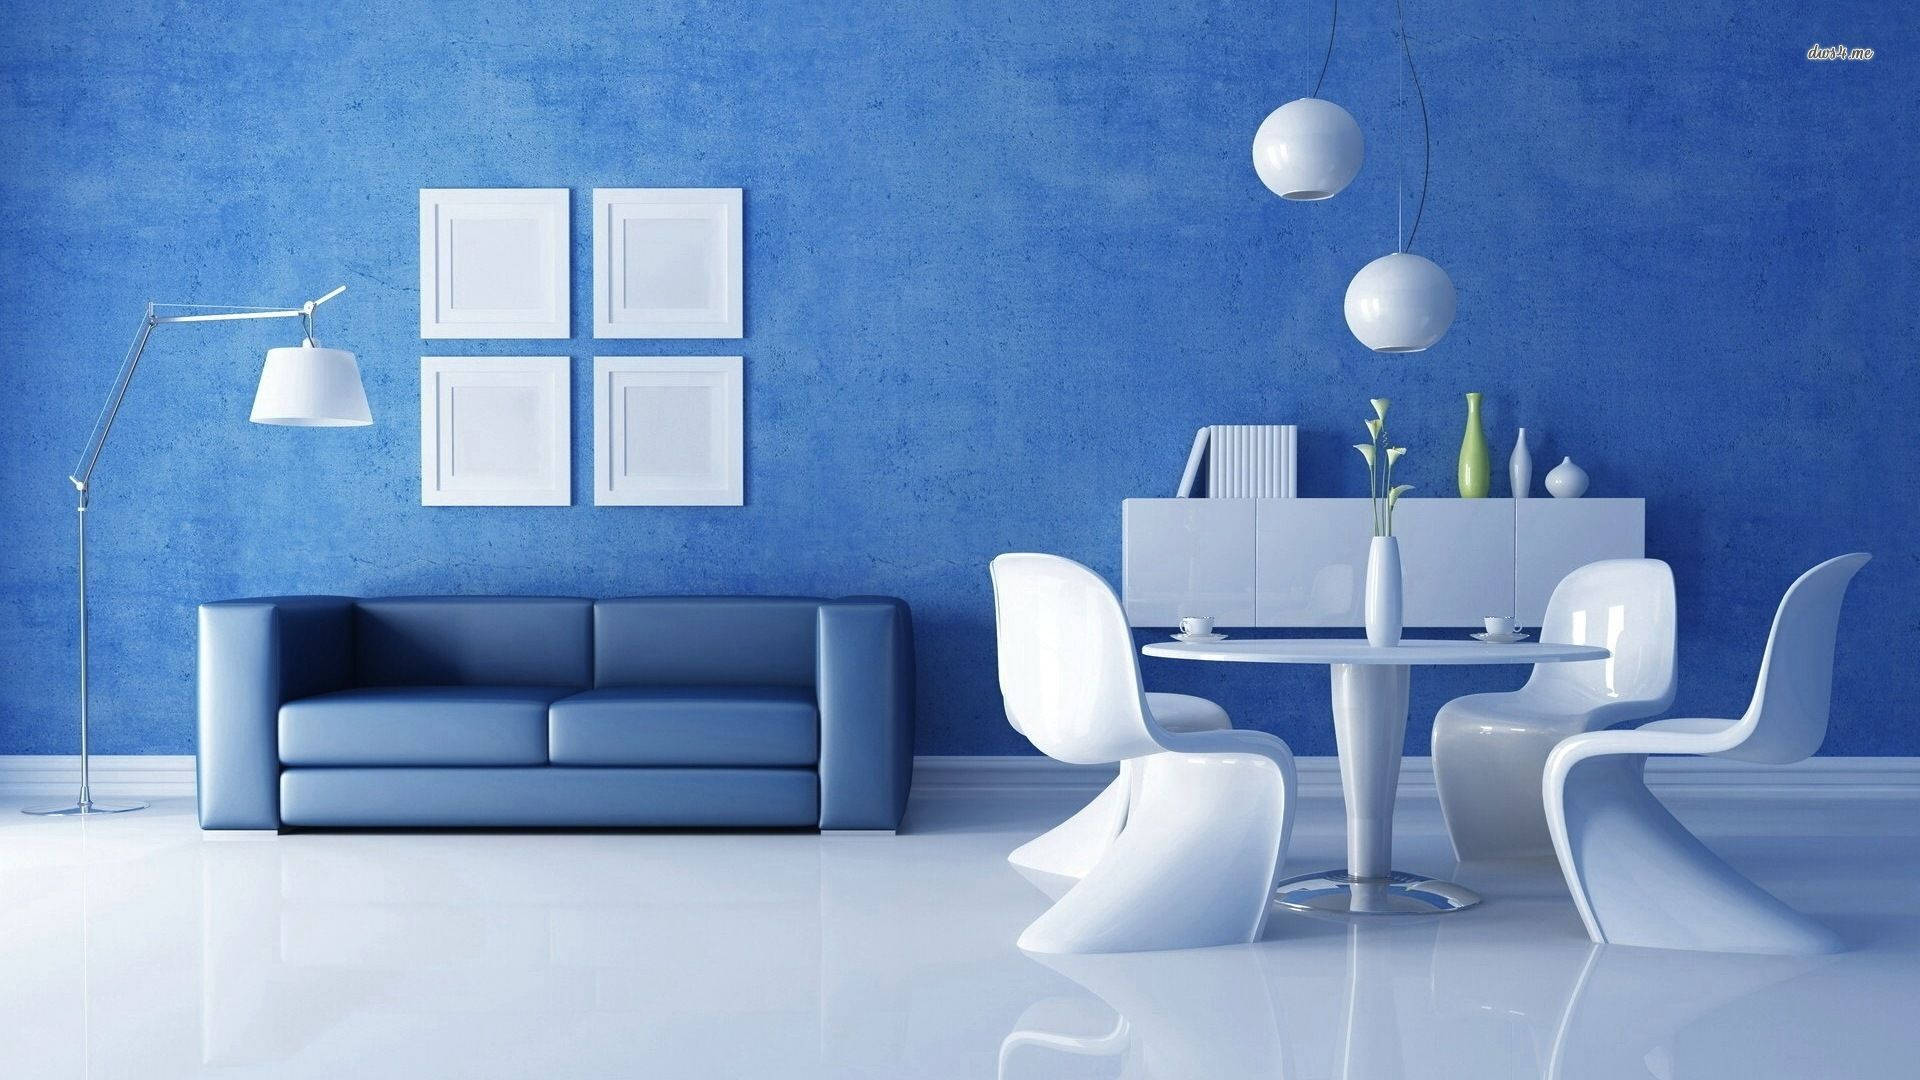 Elegant White and Blue Living Room Interior Wallpaper